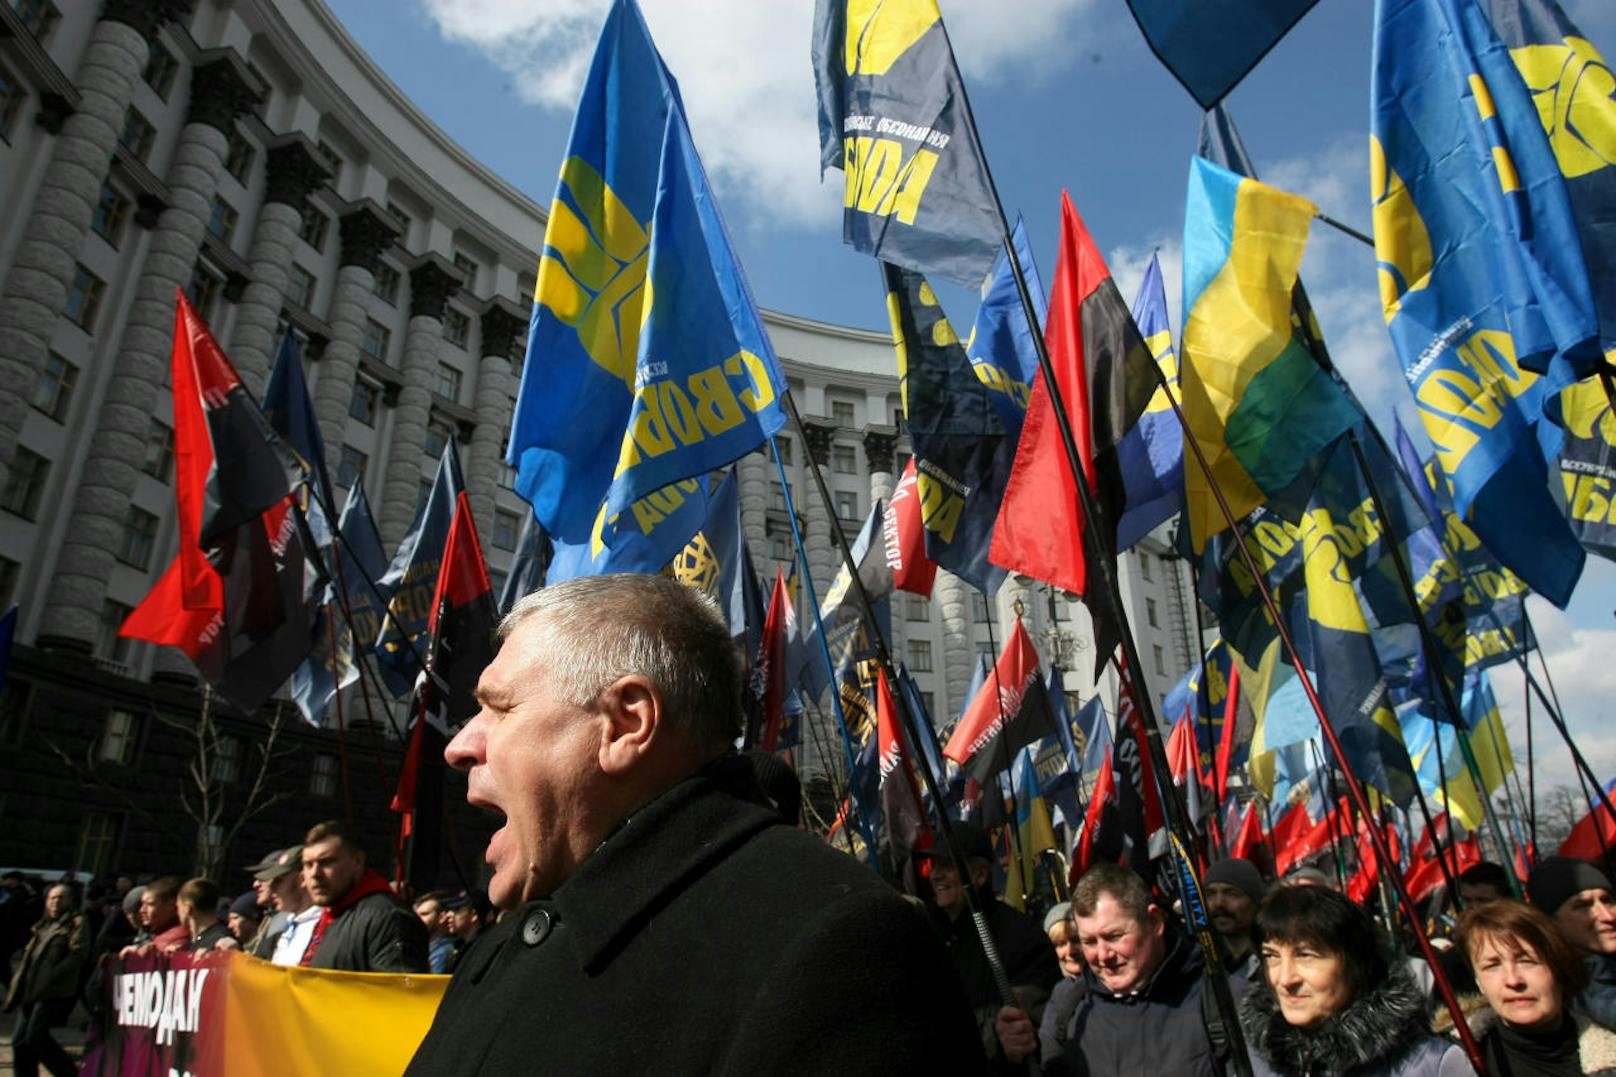 Rechte Demonstranten und Anhänger von nationalistischen Parteien marschieren mit Flaggen und Plakaten vor einem Regierungsgebäude in Kiew im April 2018.